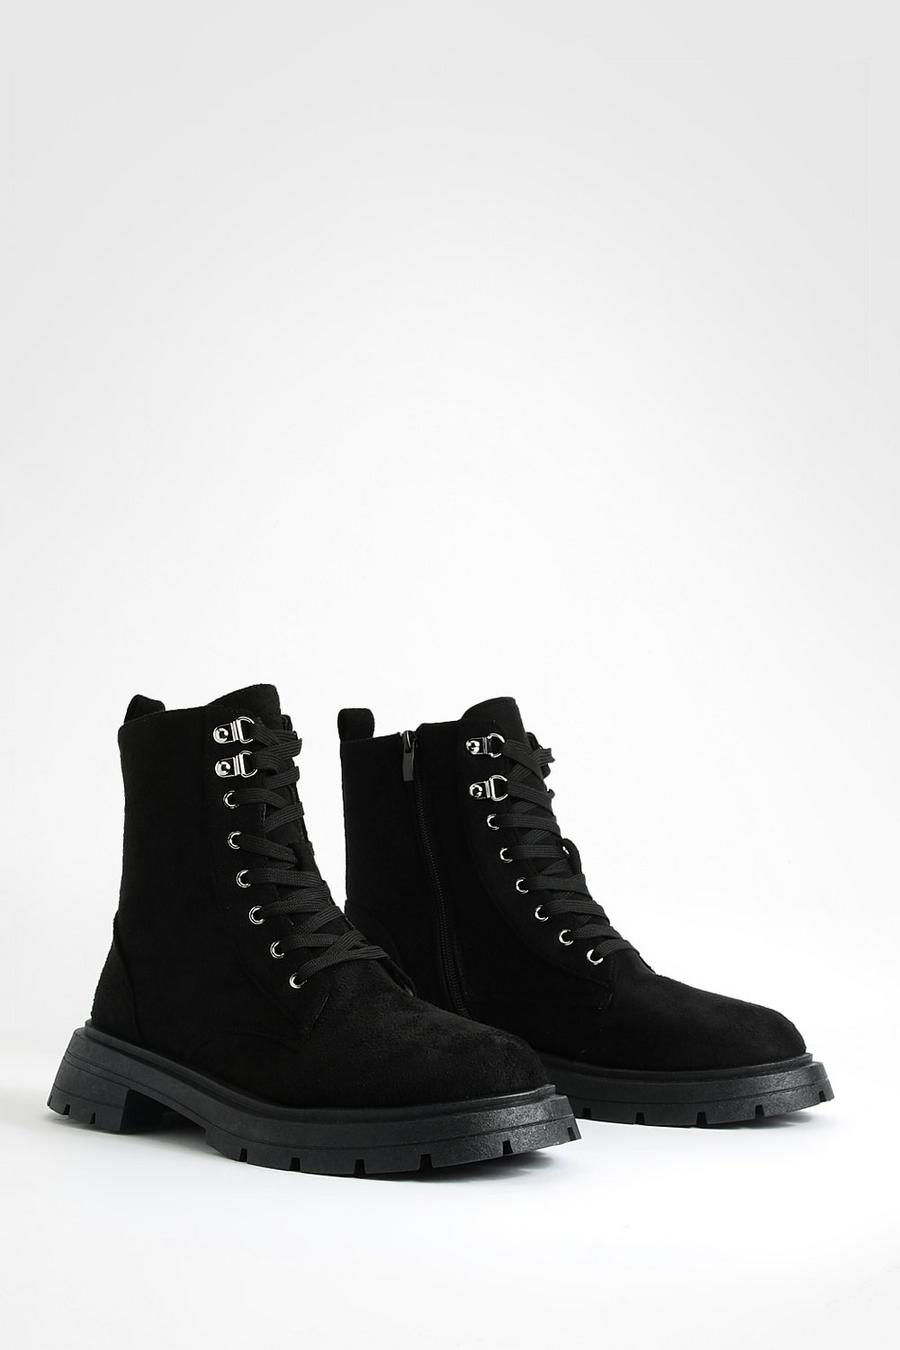 Chaussures de randonnée, Black